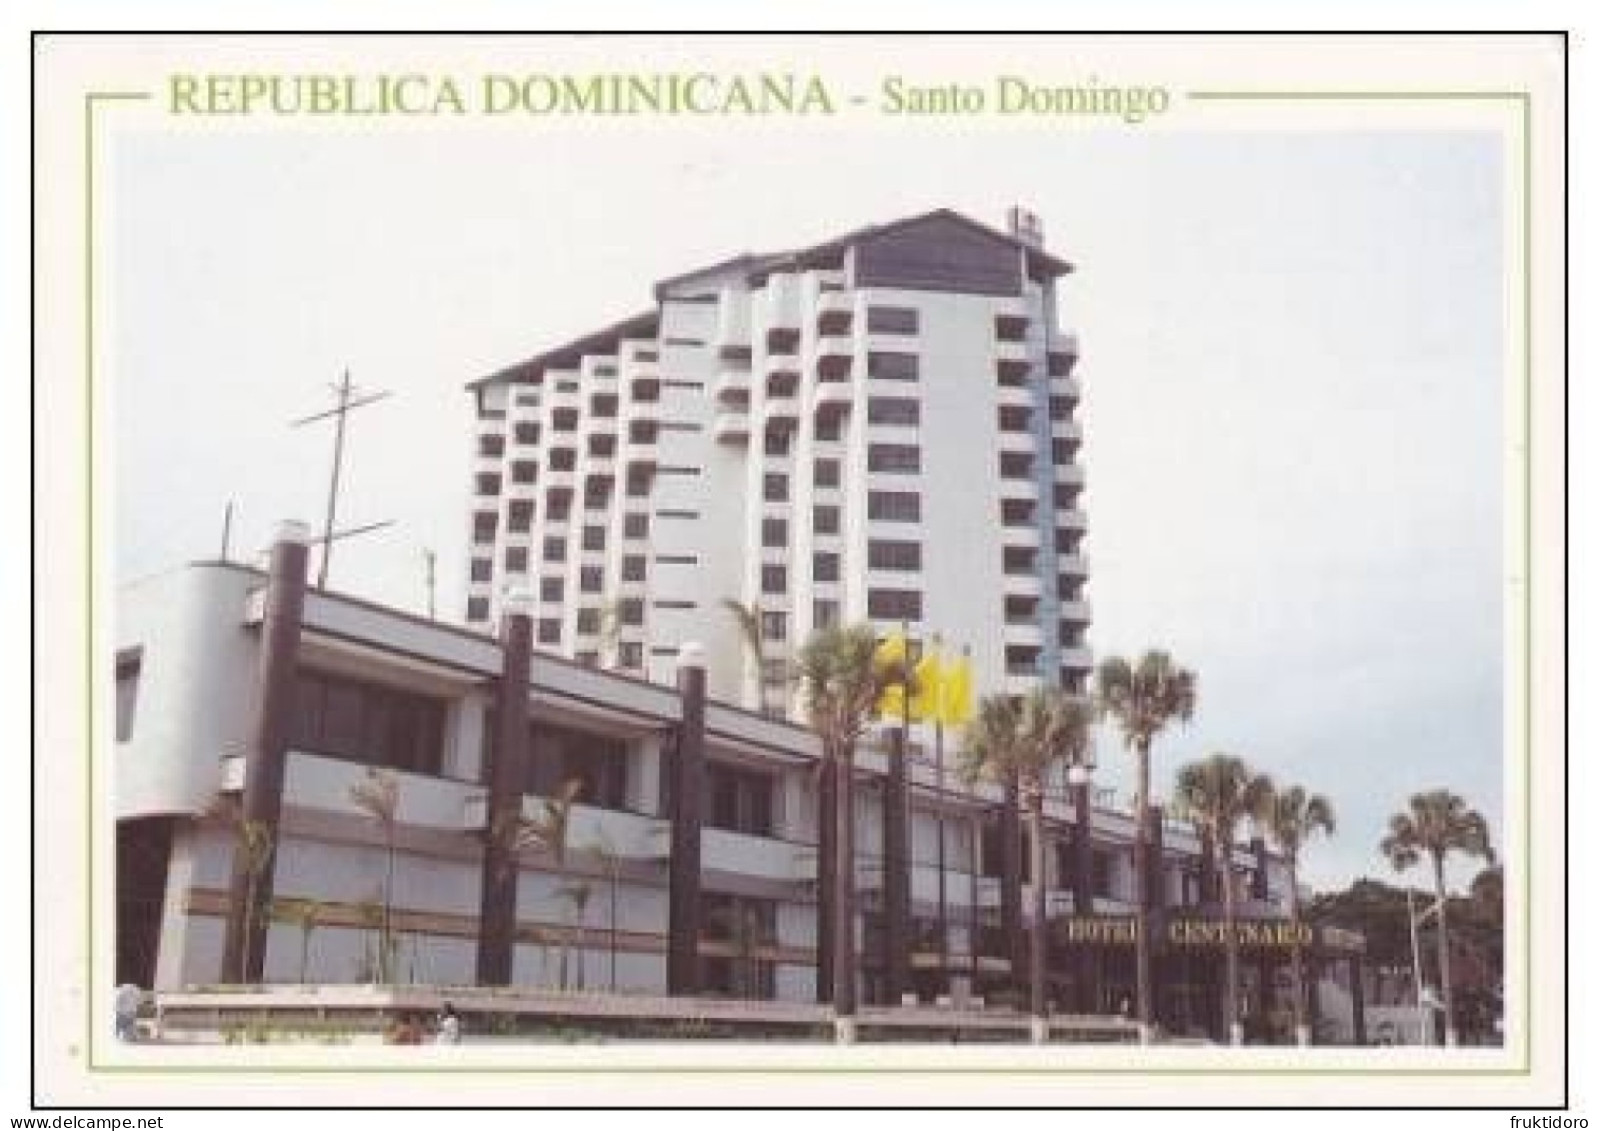 AKDO Dominican Republic Postcards Carnival La Vega - Dorada Beach - Higuey - Los Patos - Santo Domingo - República Dominicana